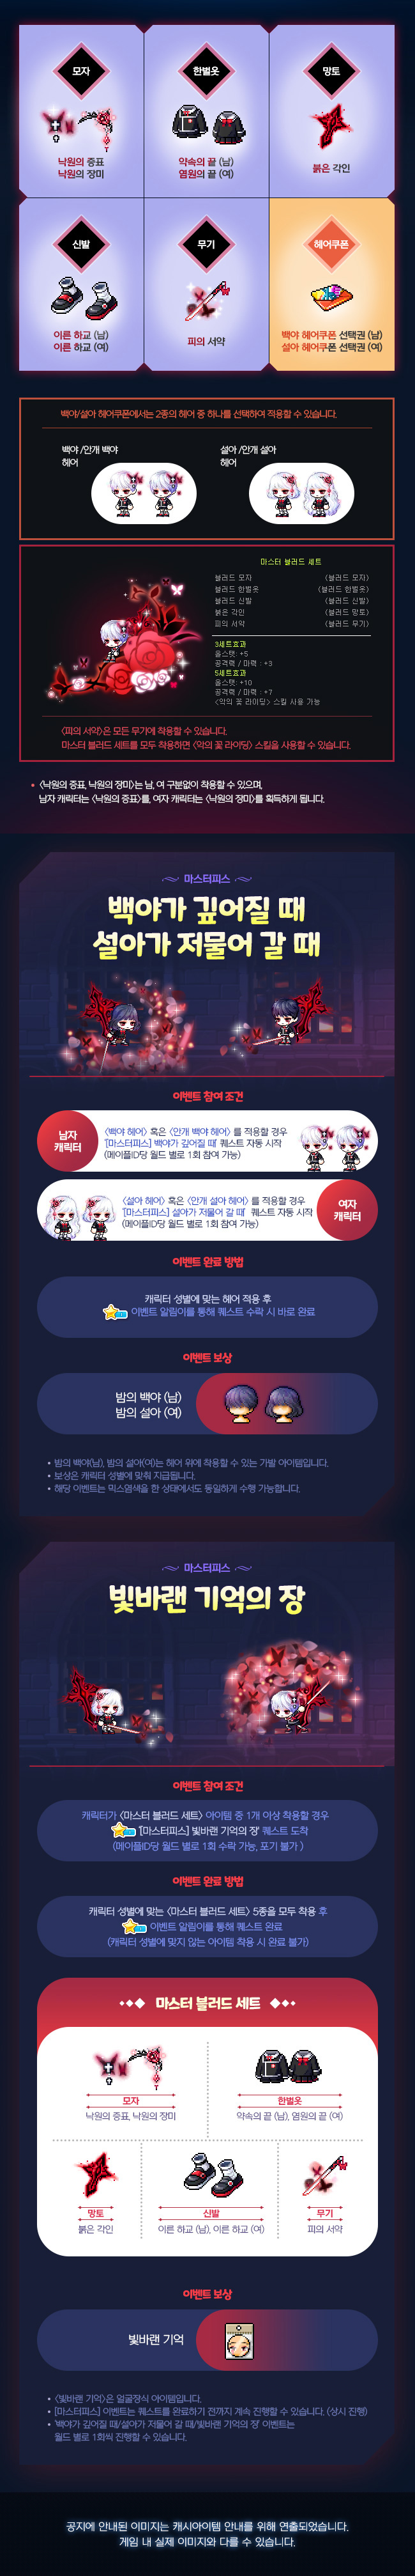 2017년 11월 30일 로얄 스타일 업데이트